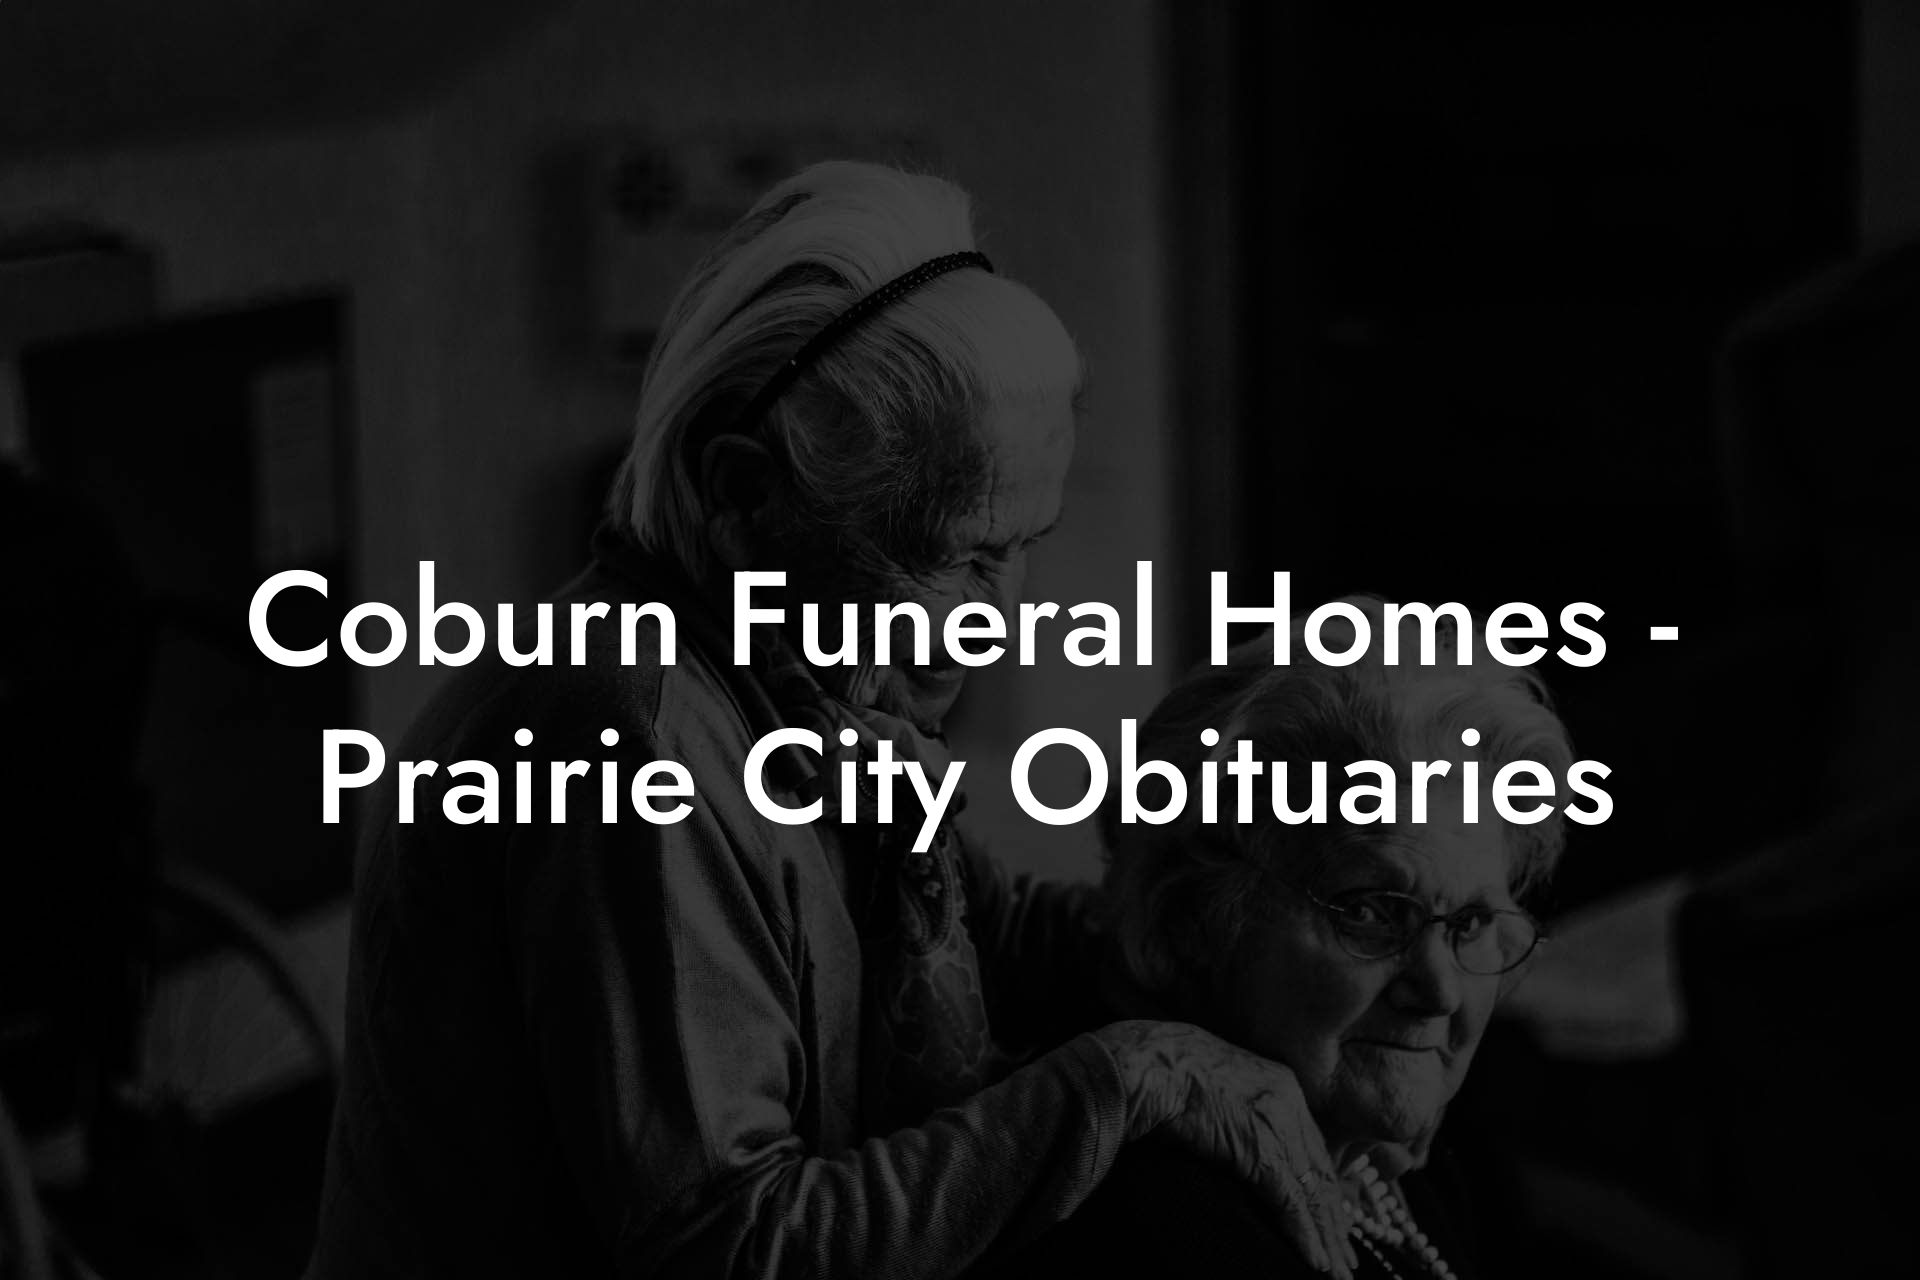 Coburn Funeral Homes - Prairie City Obituaries